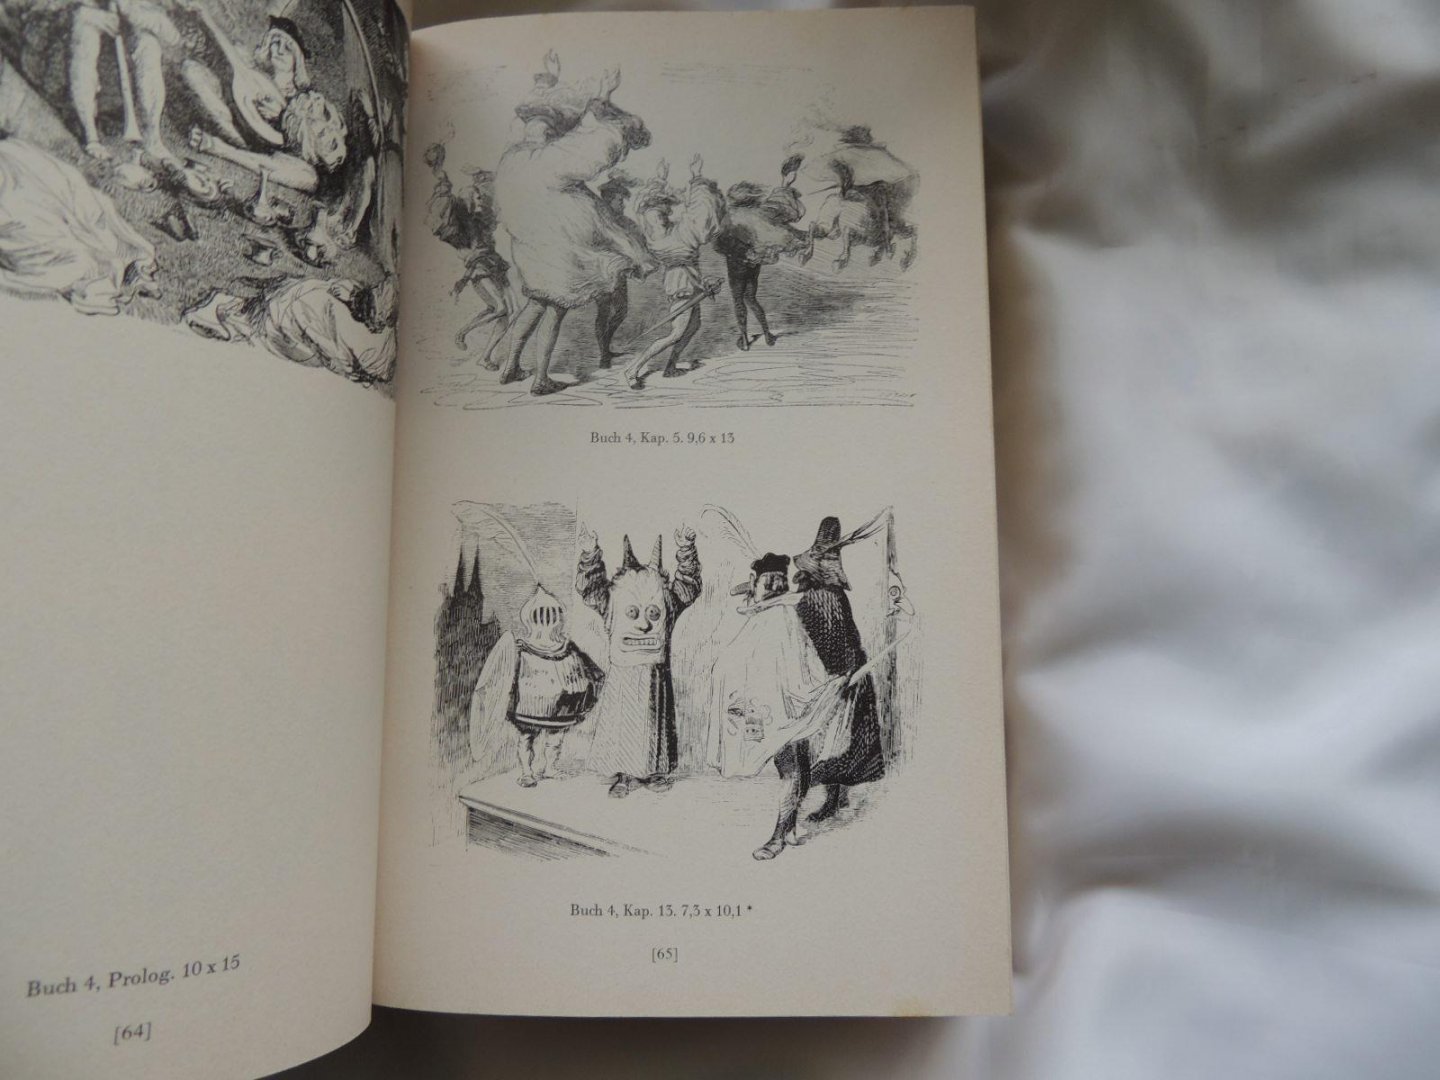 Forberg, Gabriele (Ausgewählt von) & Gunther Metken (Nachwort von) - Gustave Doré. Das graphische Werk in zwei Bänden (2 volumes)